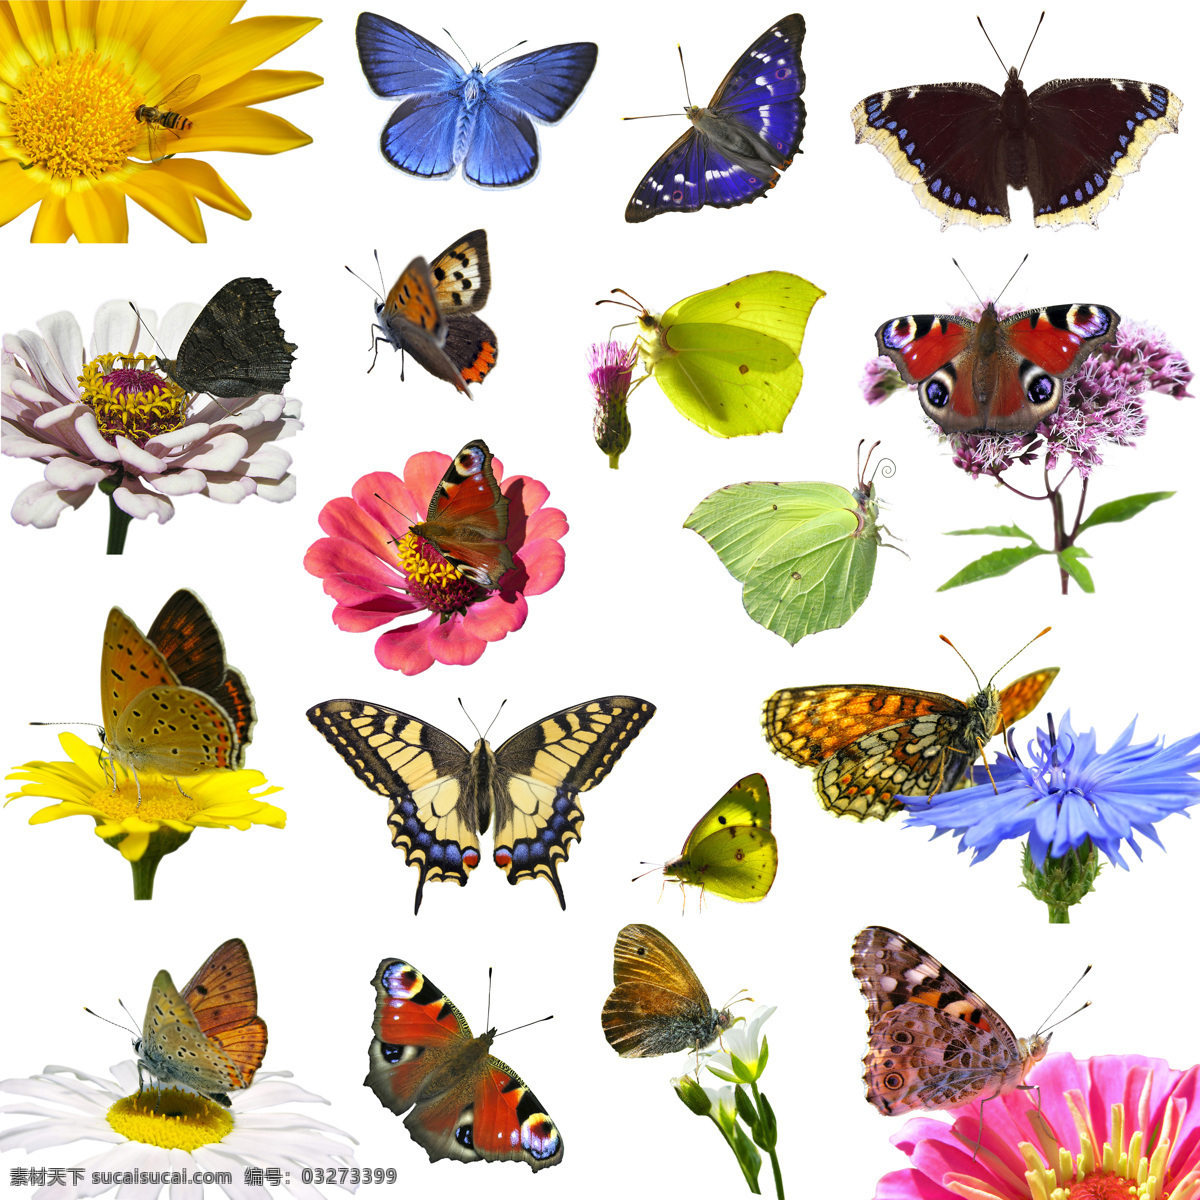 美丽 蝴蝶 美丽蝴蝶 飞蛾 动物世界 鲜花 花朵 昆虫世界 生物世界